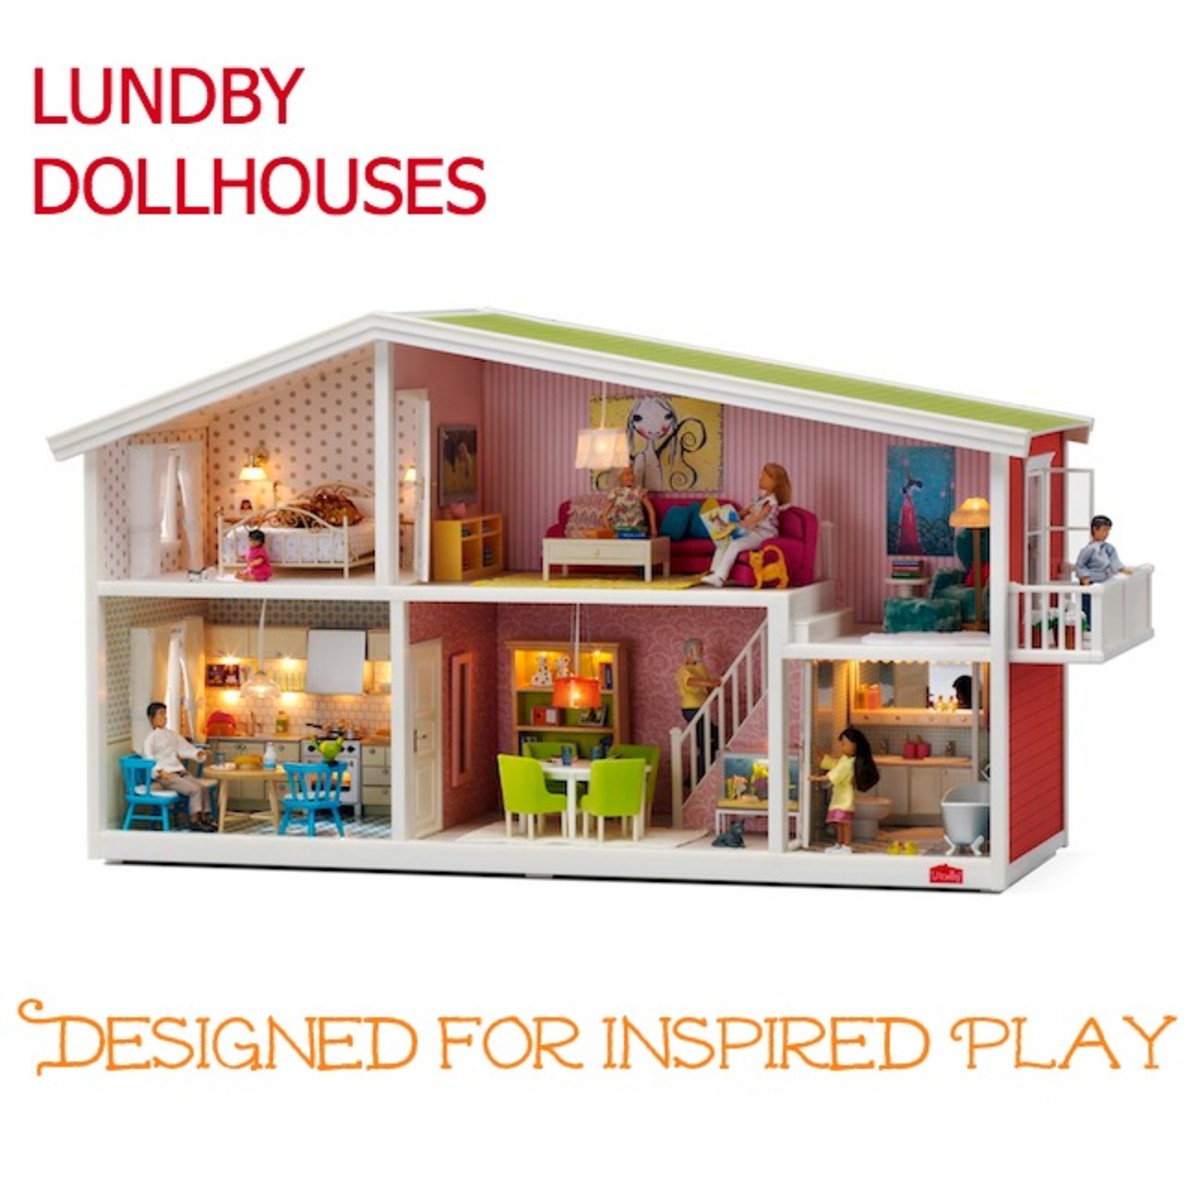 Lundby Smaland DollHouse